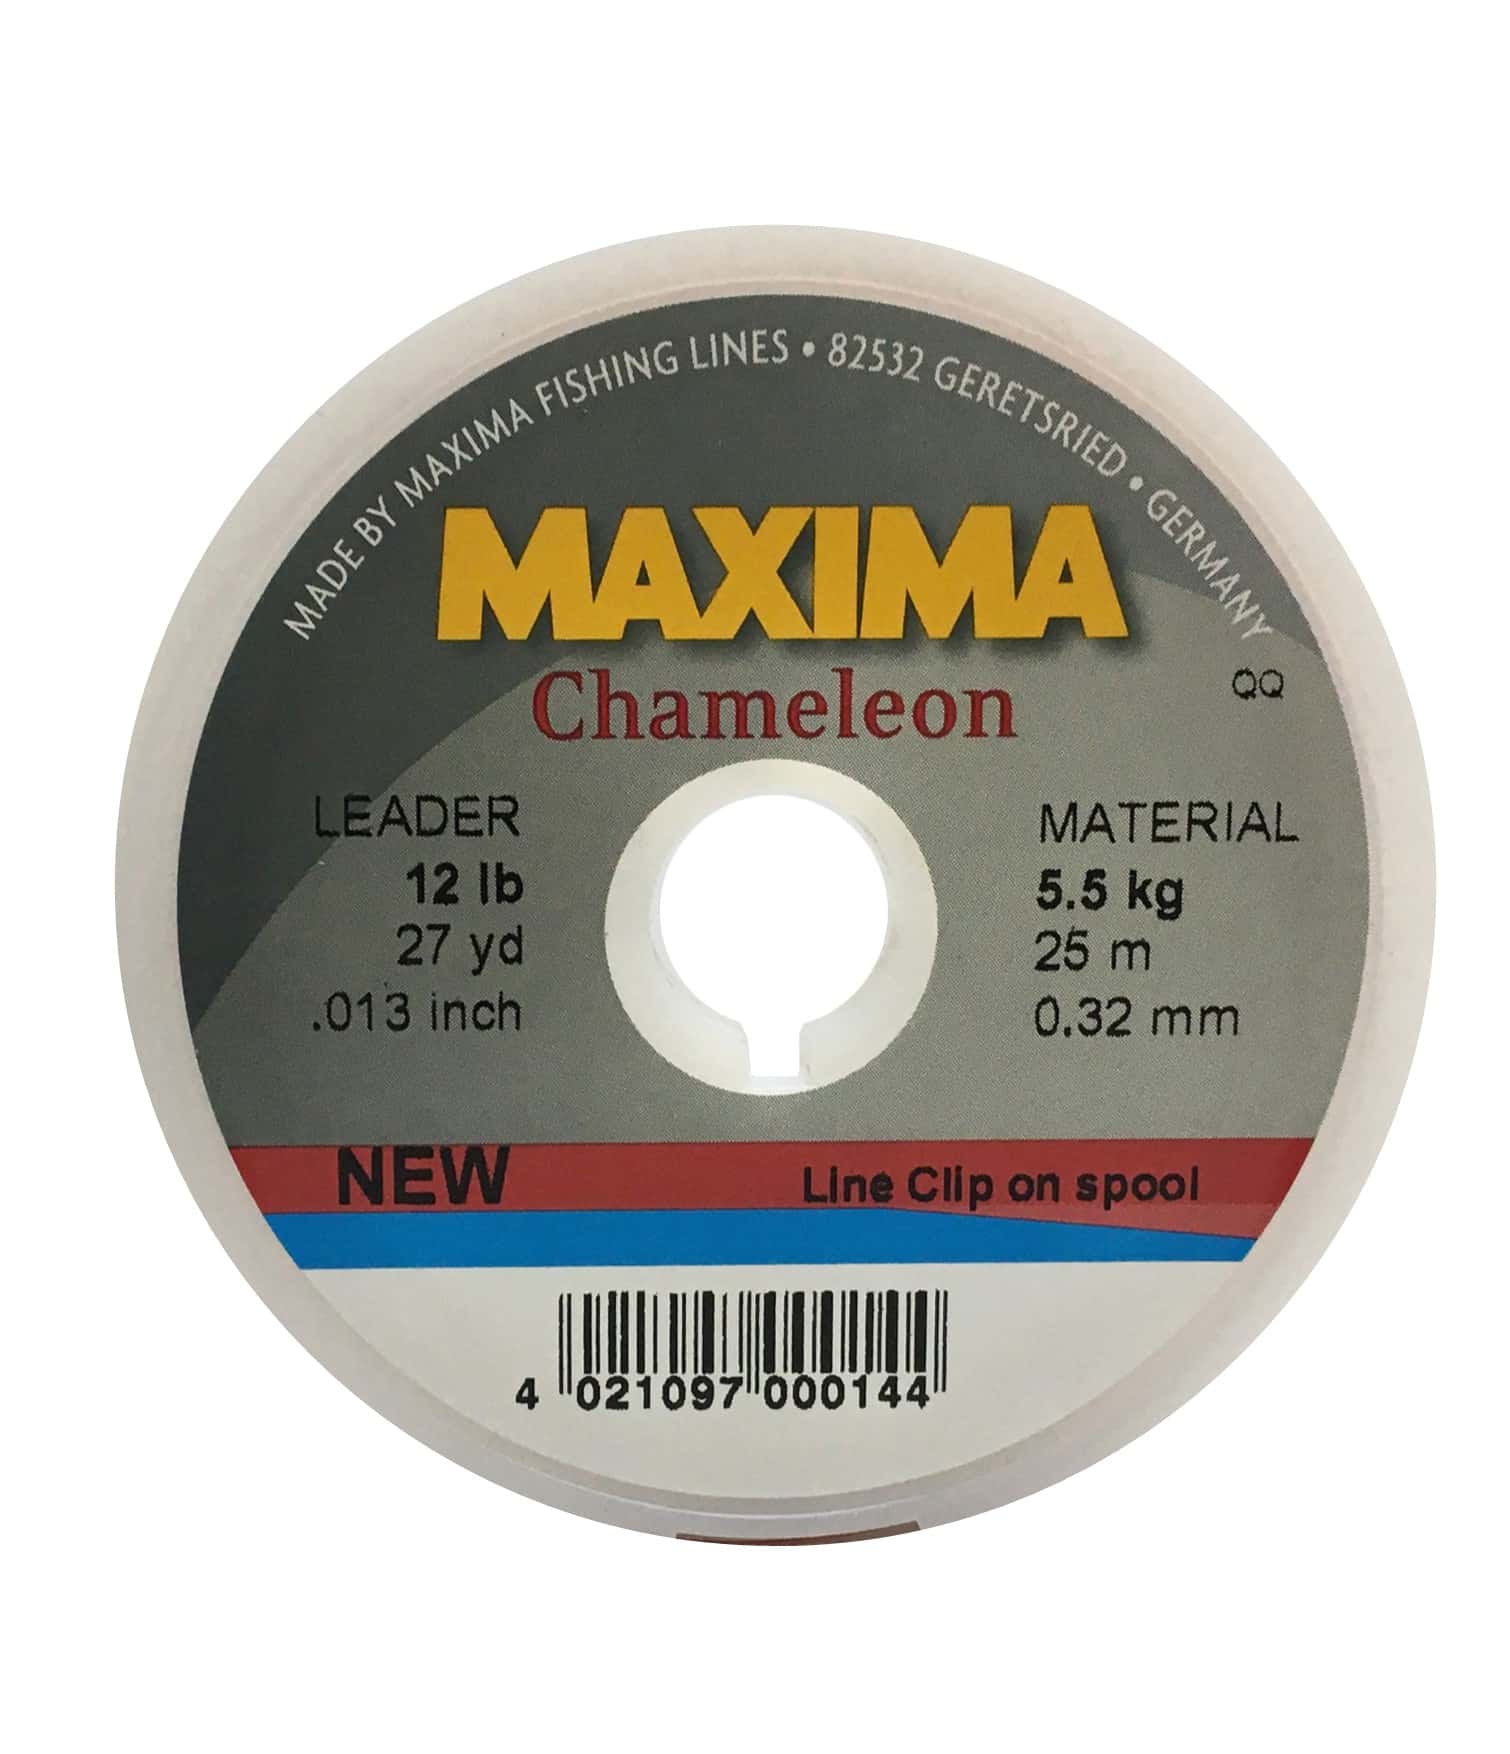 Maxima Chameleon Leader Wheel 20 lb